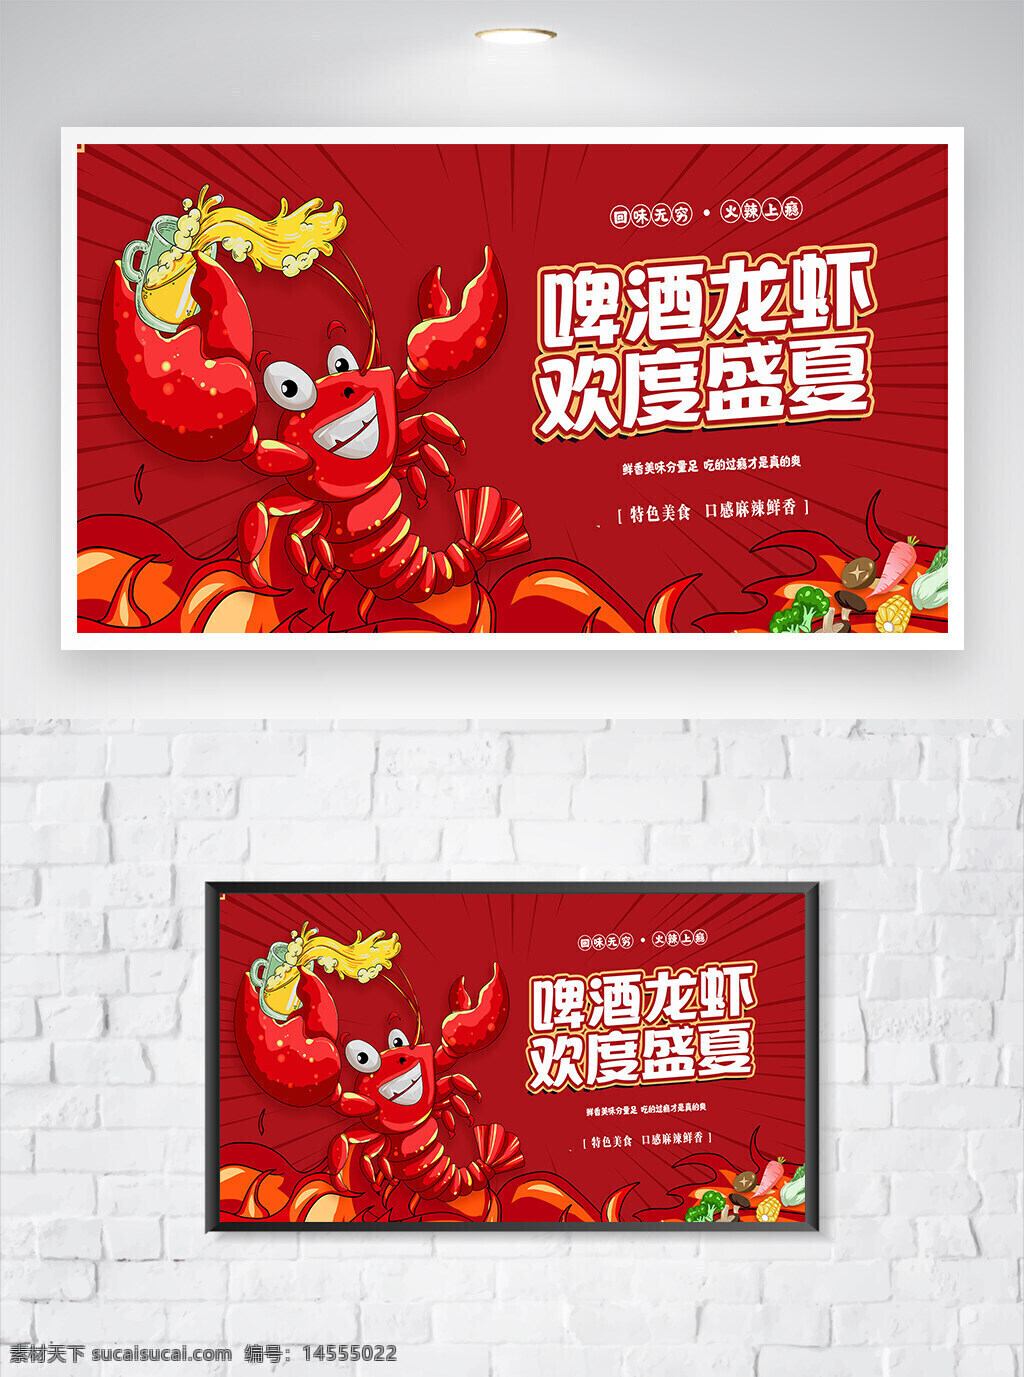 小龙虾 小龙虾宣传 小龙虾海报 美食宣传 美食海报 宣传海报 卡通海报 创意海报 卡通创意 海报